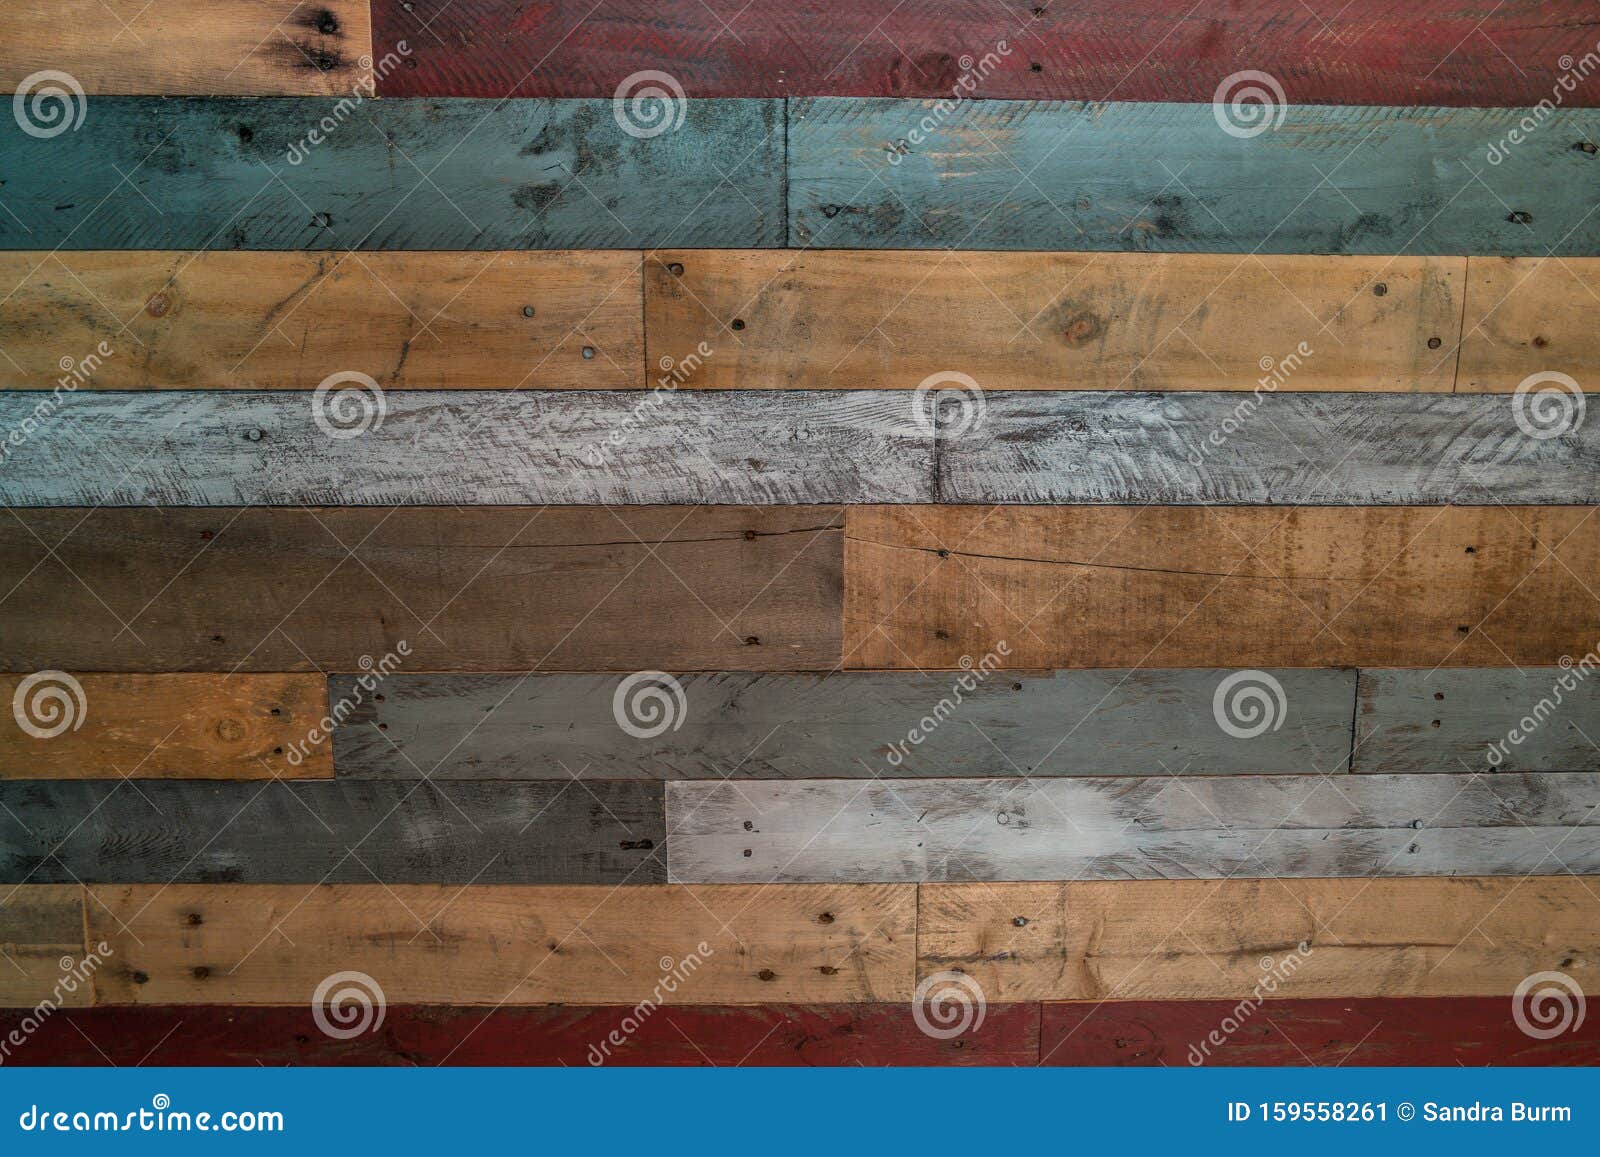 Heup Aan de overkant Motivatie Meerkleurige Houten Palletwand Stock Afbeelding - Image of ontwerp,  exemplaar: 159558261